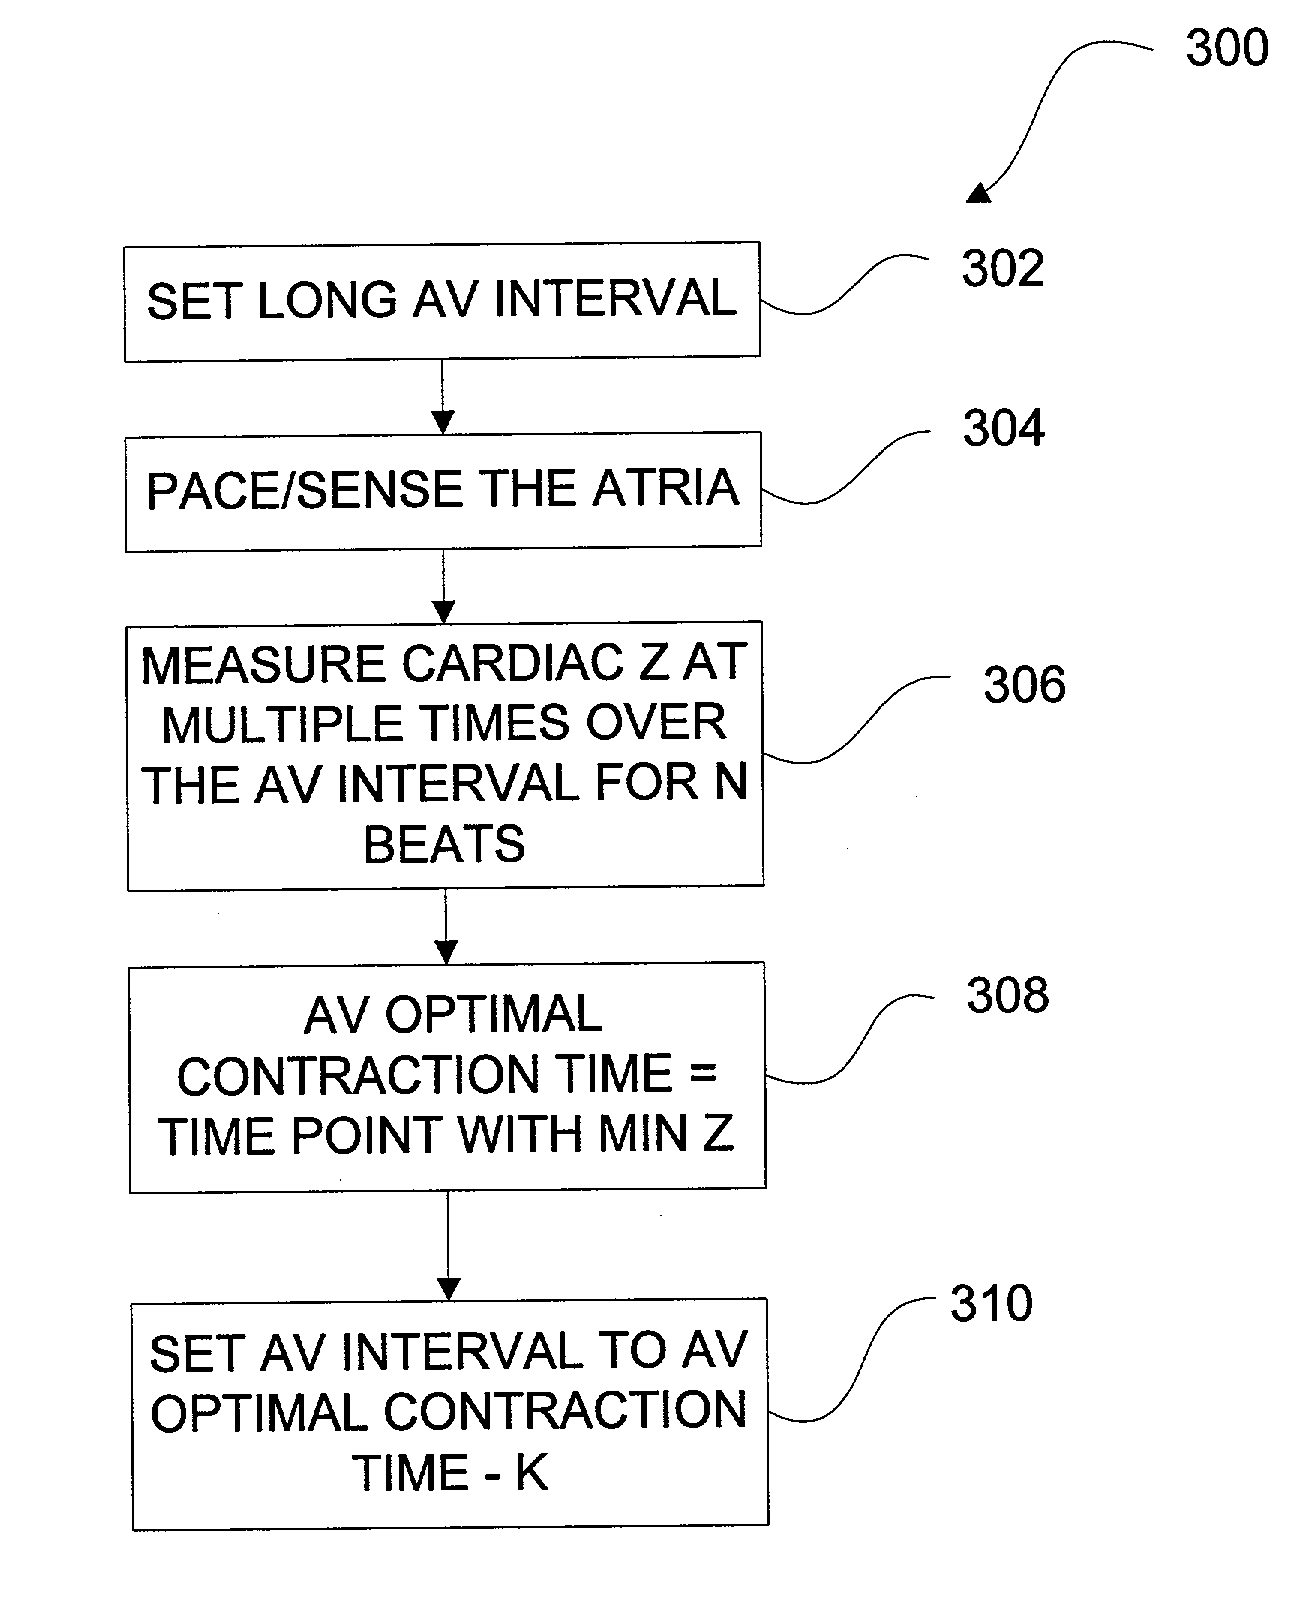 Algorithm for the automatic determination of optimal AV an VV intervals